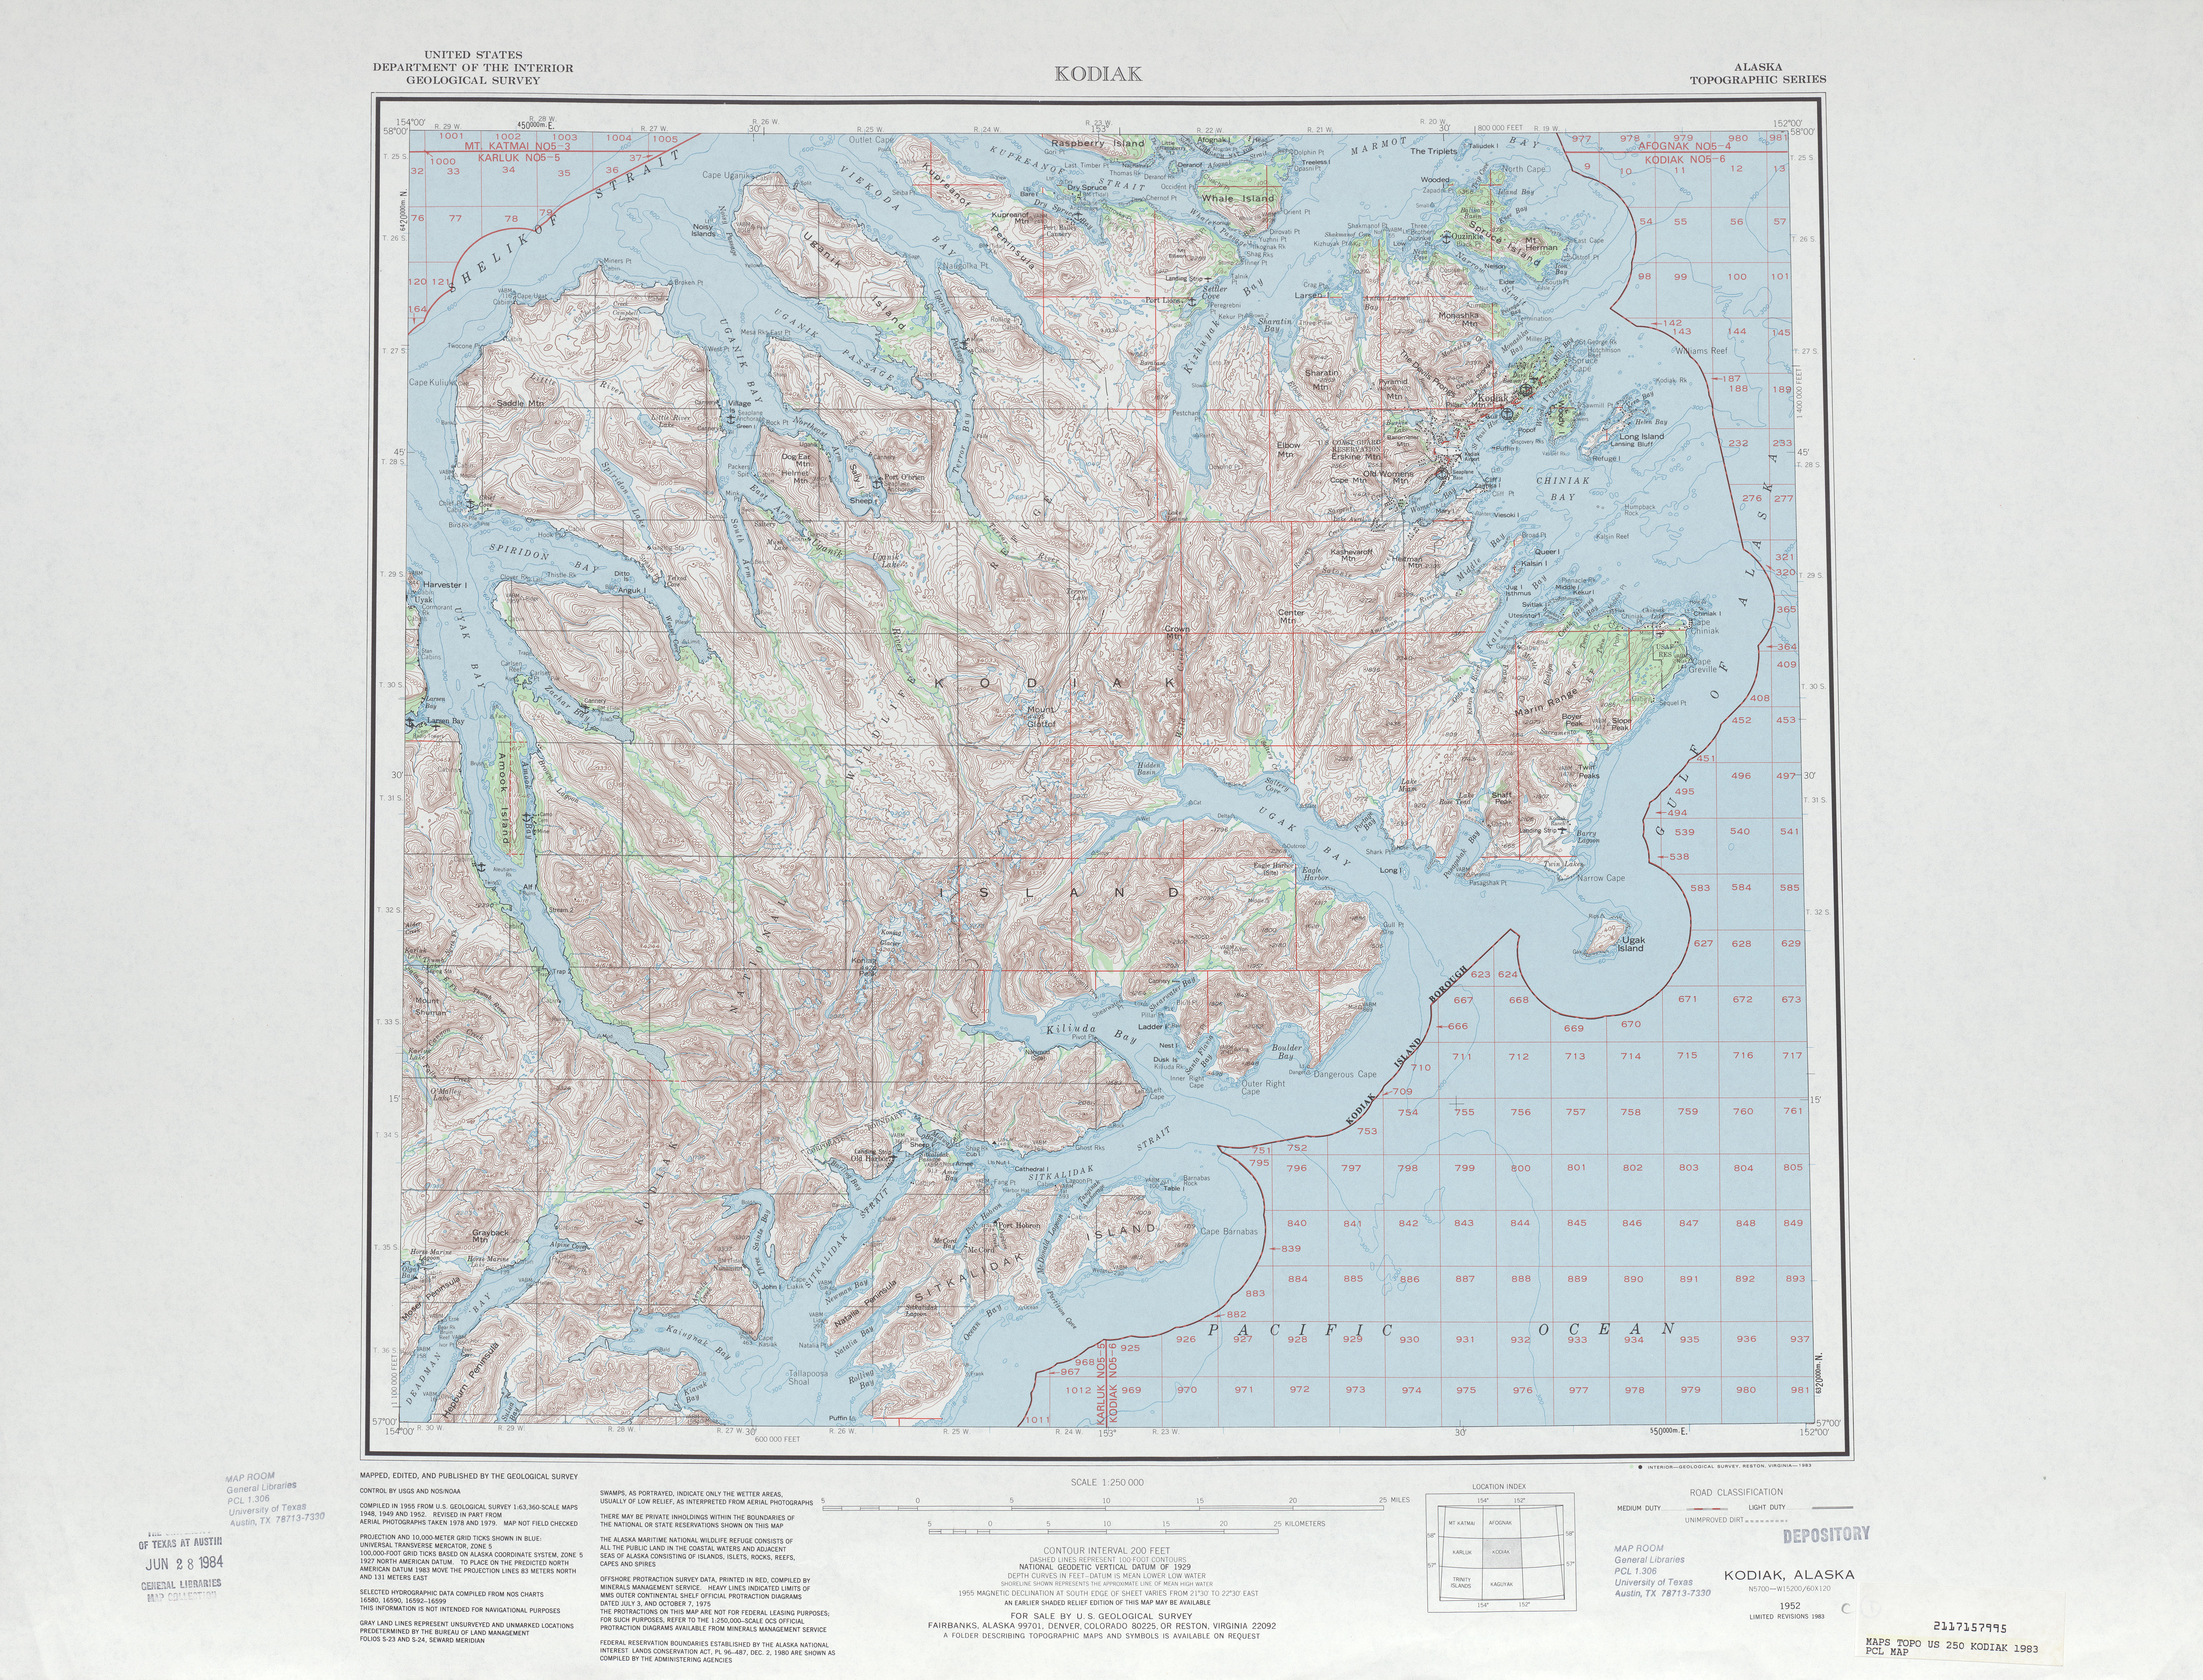 Hoja Kodiak del Mapa Topográfico de los Estados Unidos 1983